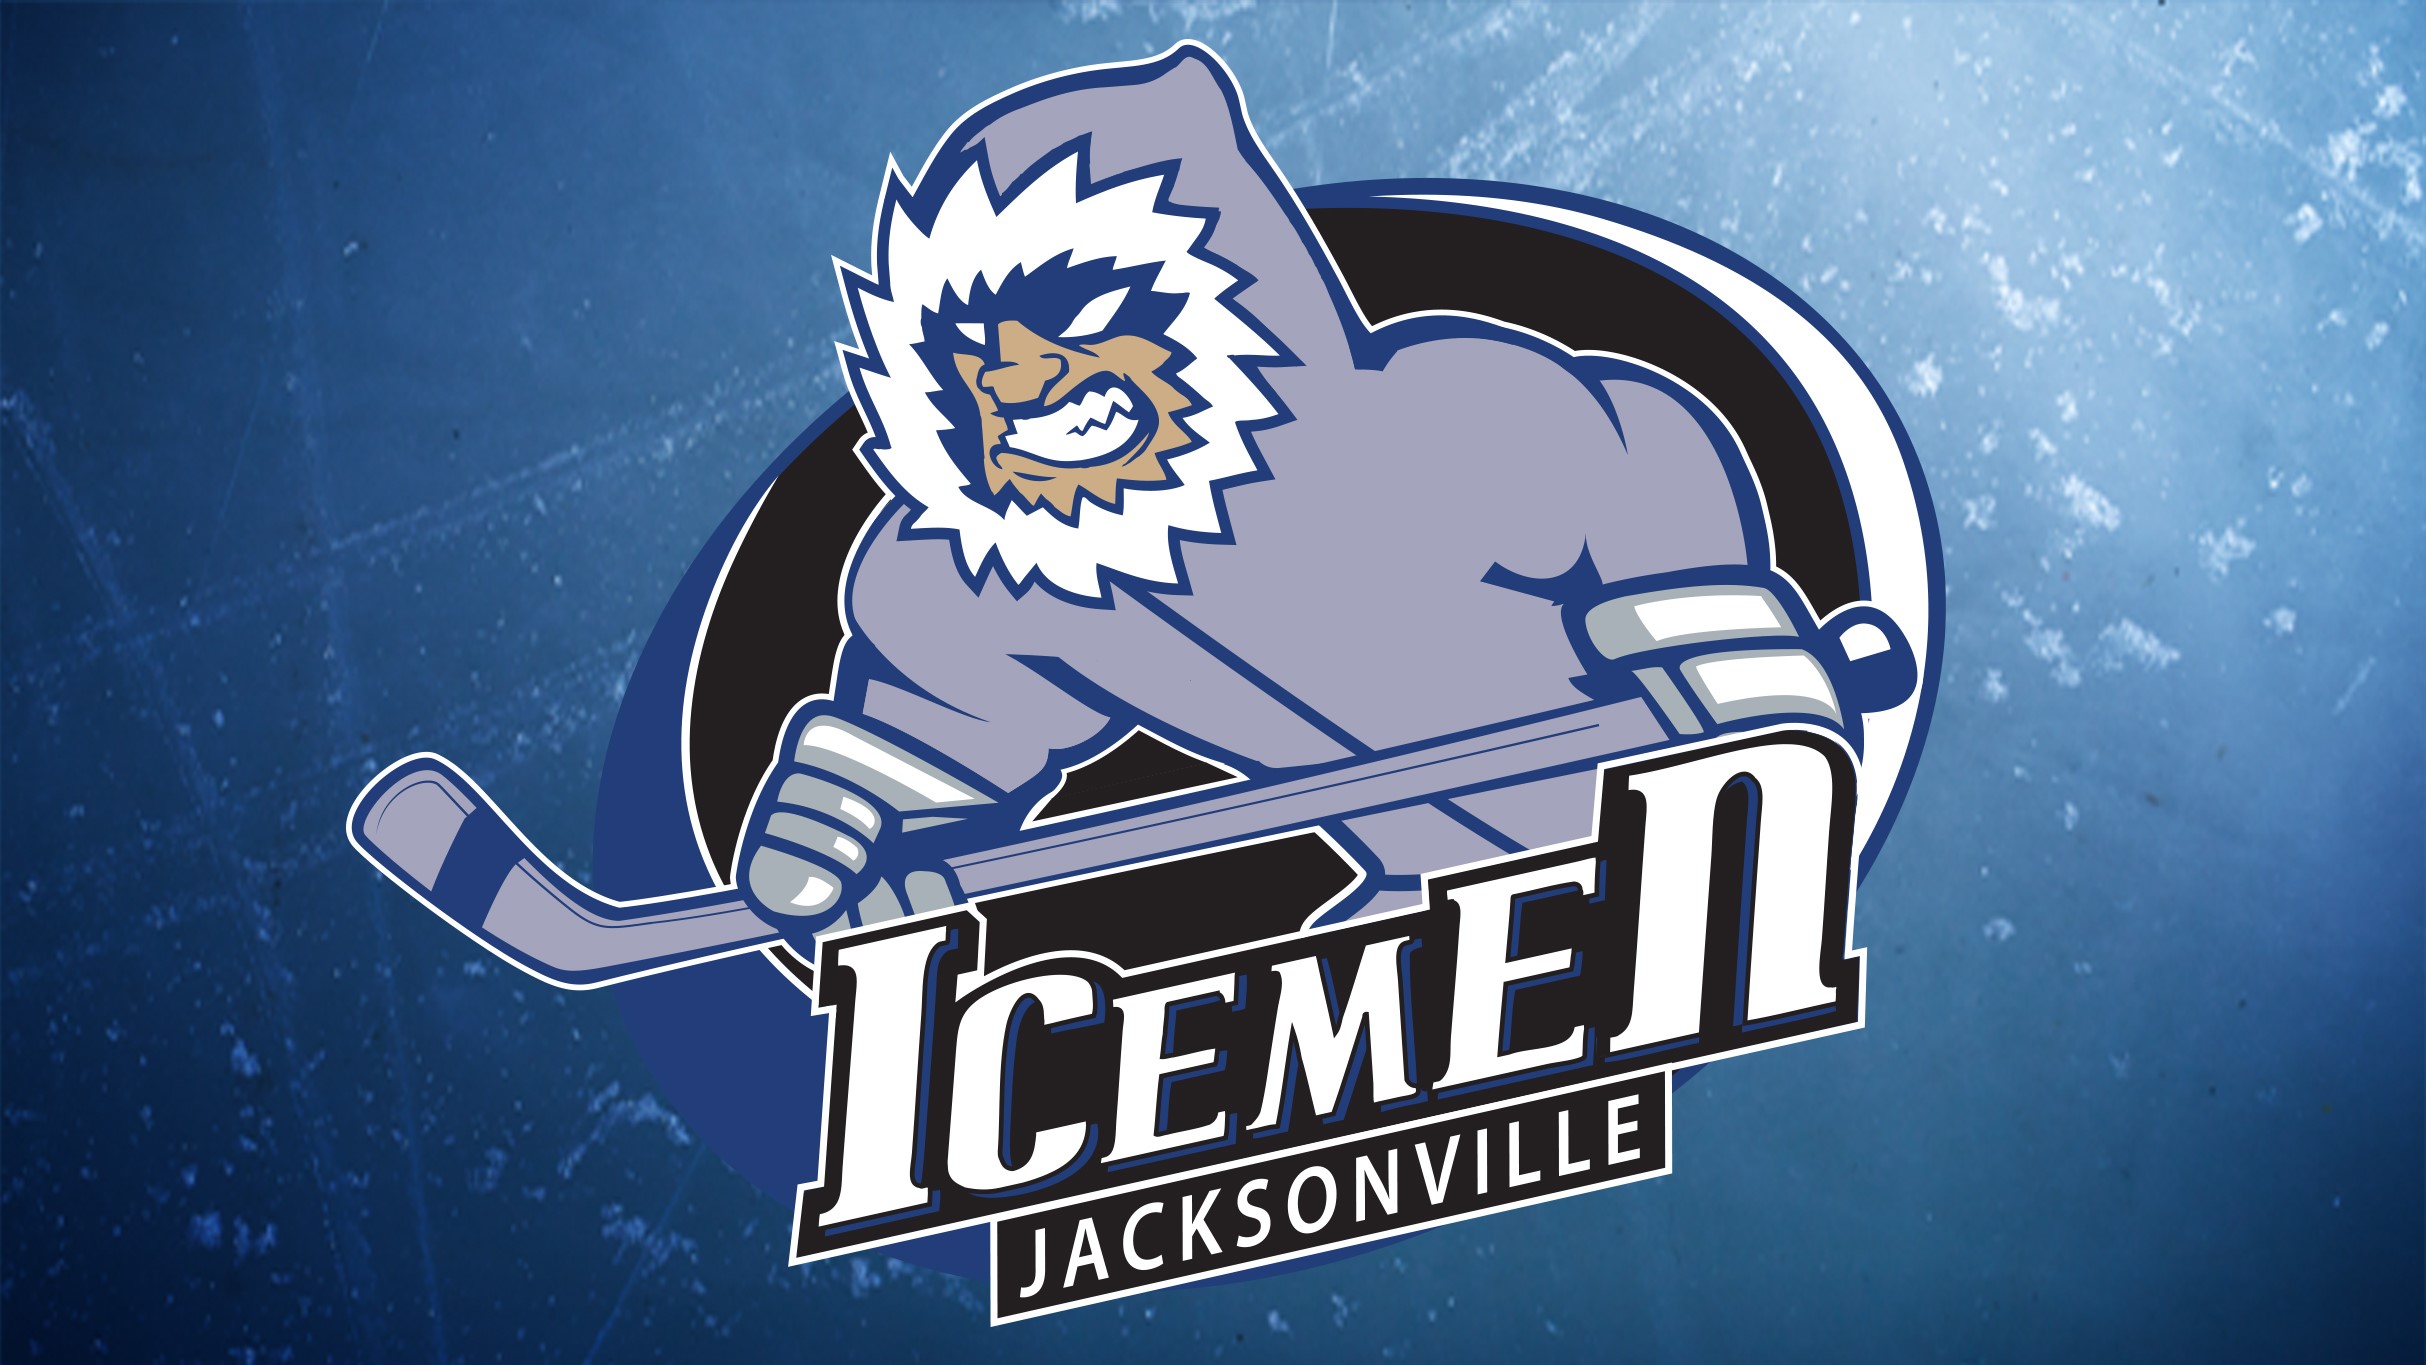 Jacksonville Icemen v TBD Opponent Home Playoffs Round 4 Game 4